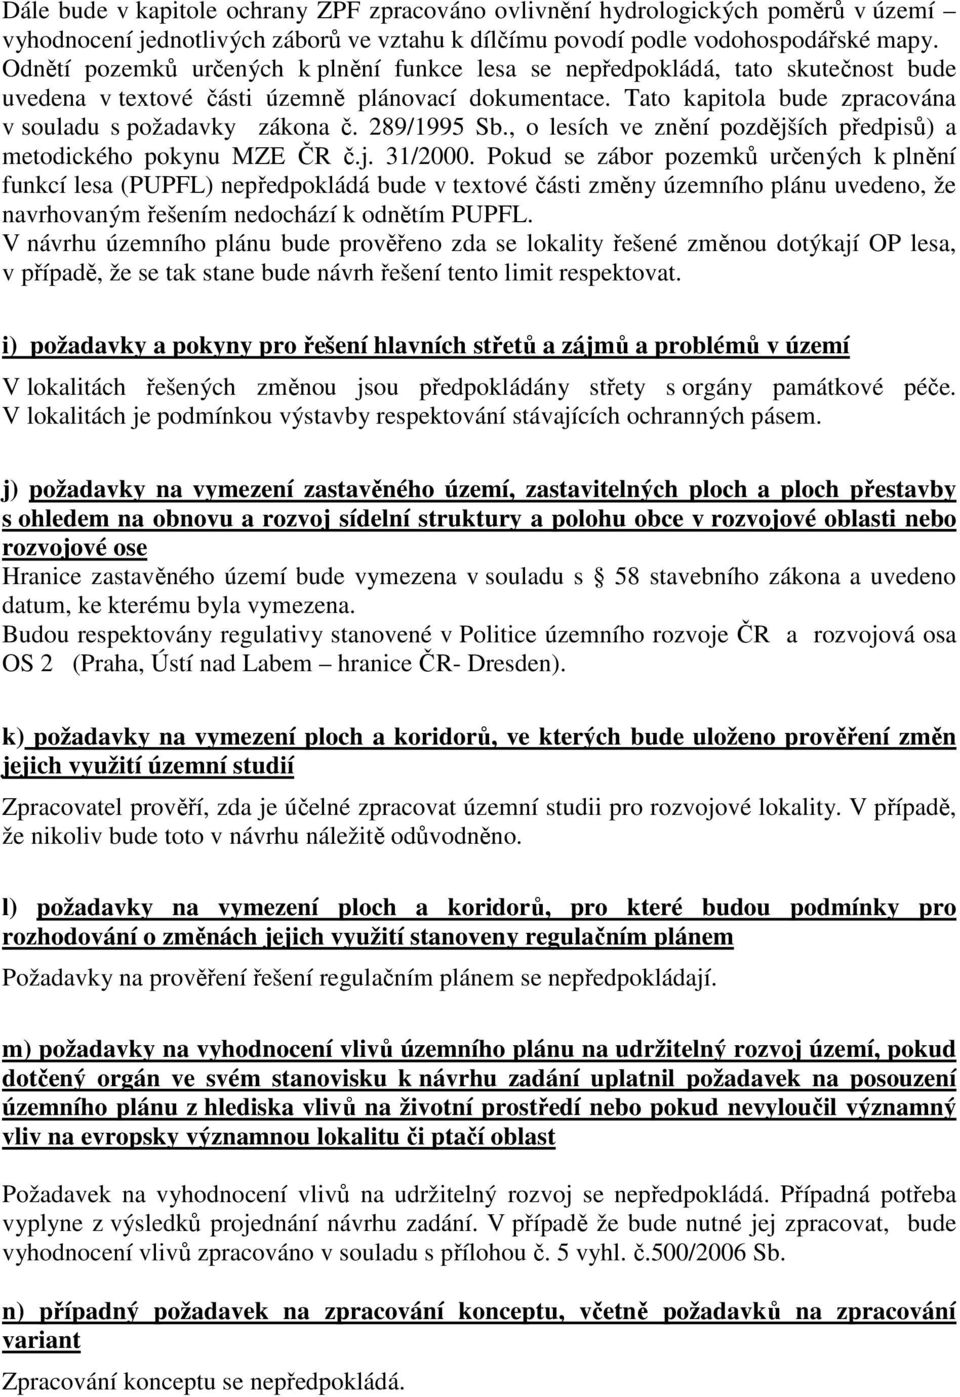 289/1995 Sb., o lesích ve znění pozdějších předpisů) a metodického pokynu MZE ČR č.j. 31/2000.